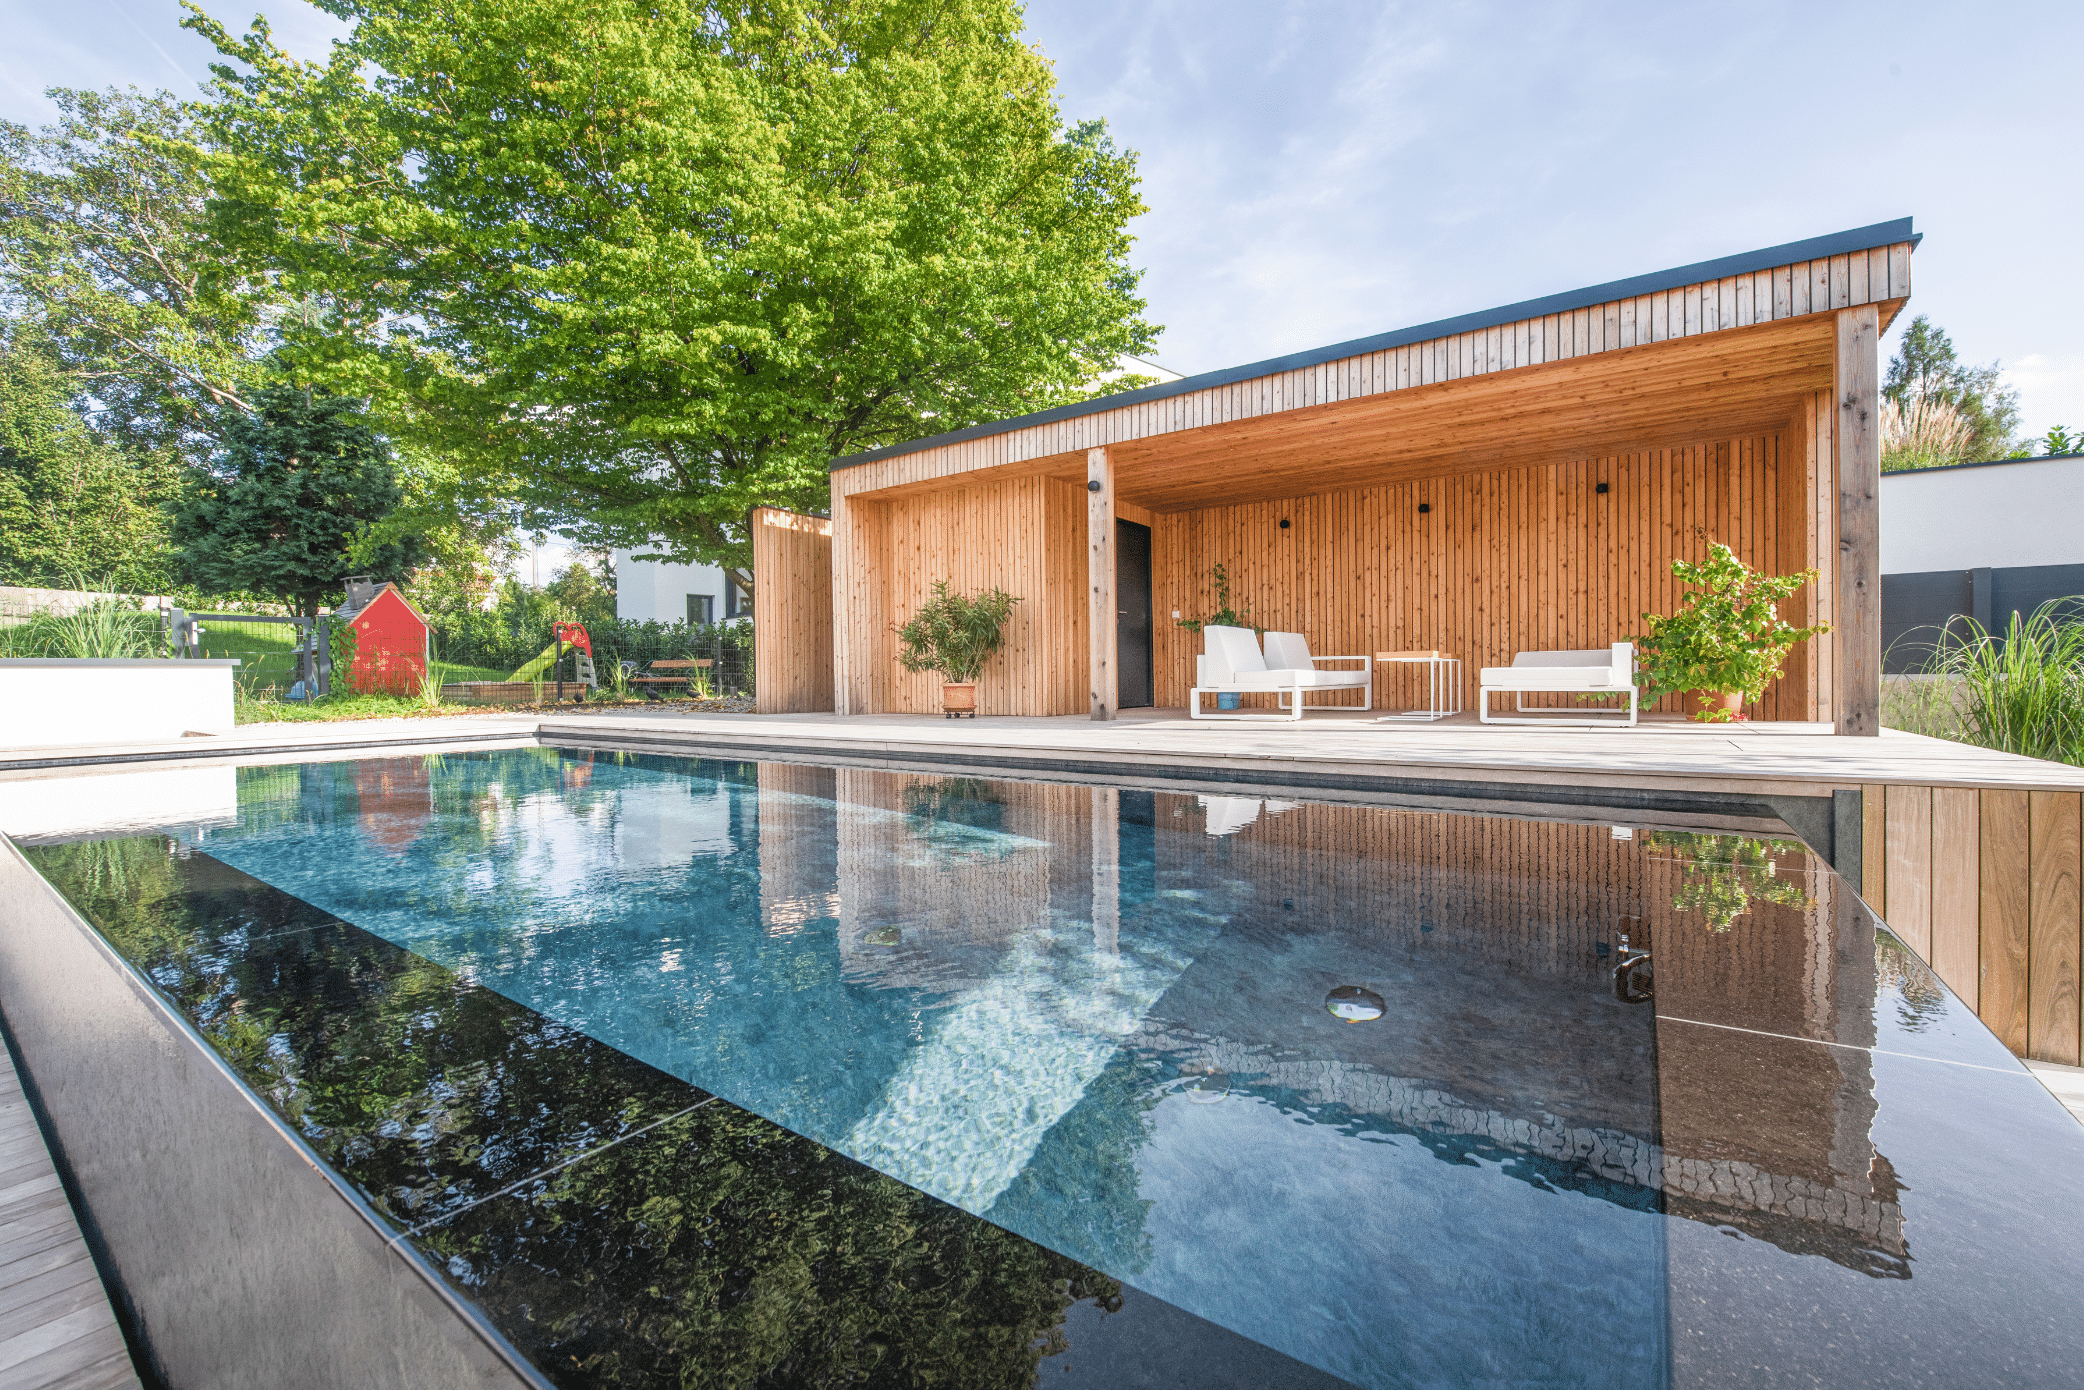 RUHA zeigt einen modernen Infinity Pool mit schwarzem Rand und Holzumrandung in einem Garten mit einer Terrasse, überdachter Sitzlounge und kleinem Spielplatz für Kinder.